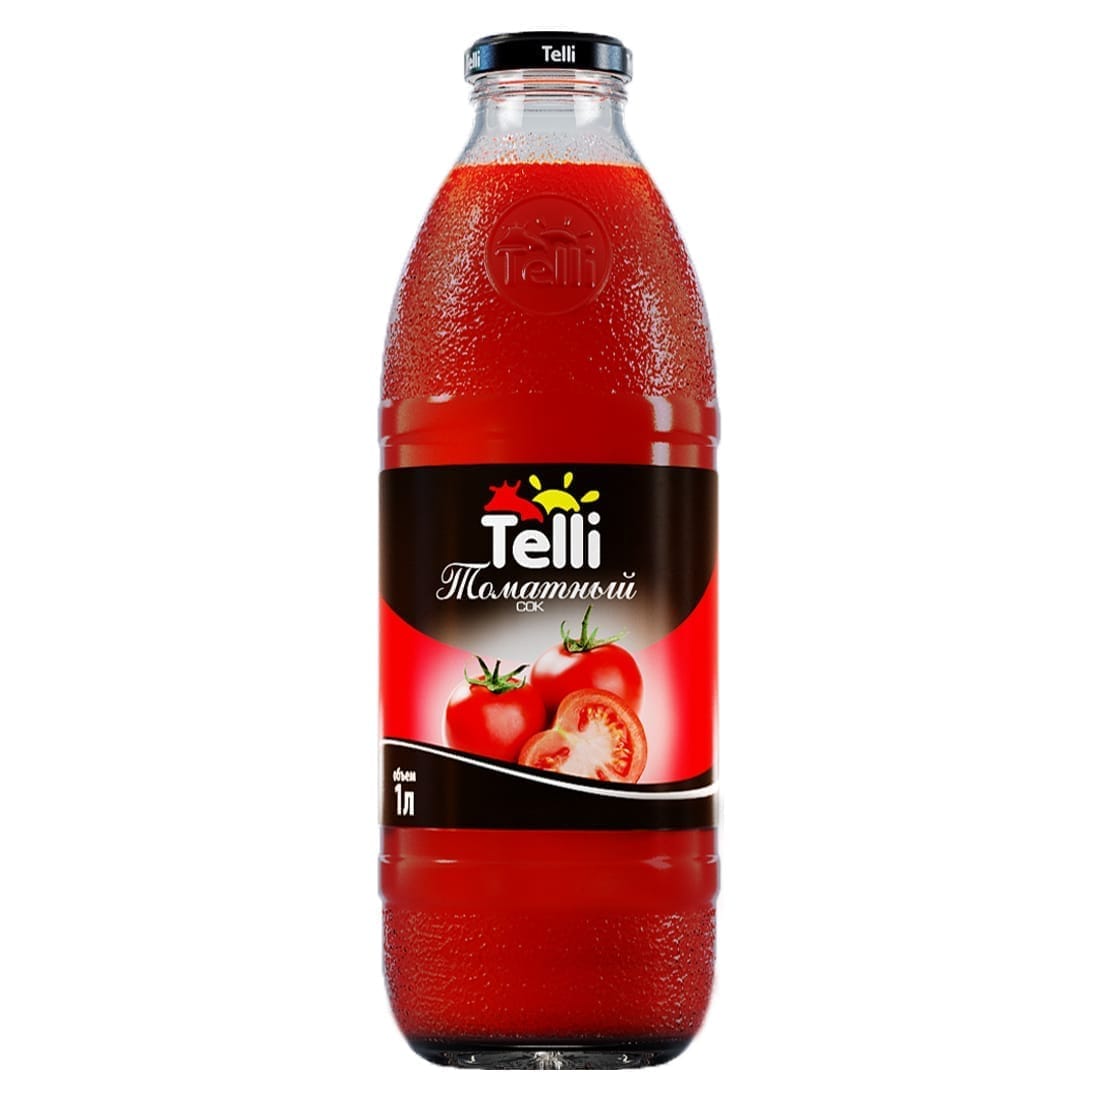 Вода вода томатный сок вода вода. Гранатовый сок Telli. НКЗ сок томатный 1л. Telli сок гранатовый 1л*8 с/б (от 1 упаковки). Гранатовый сок "Telli" 1 л.